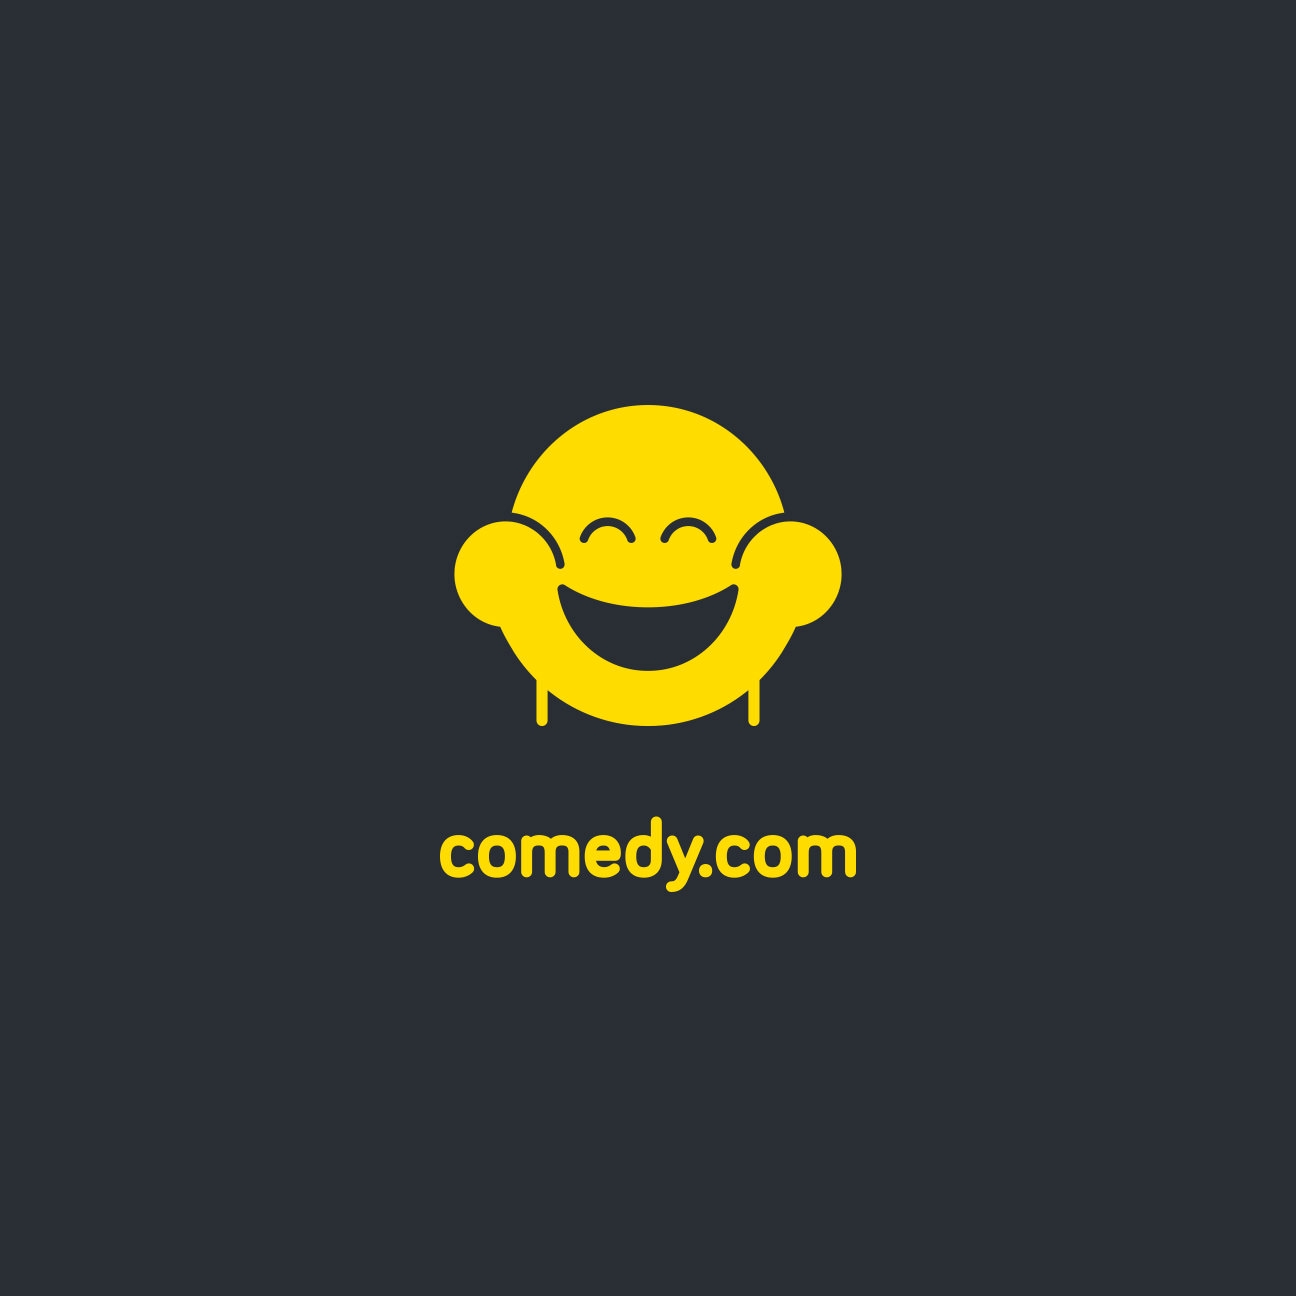 Comedy.com